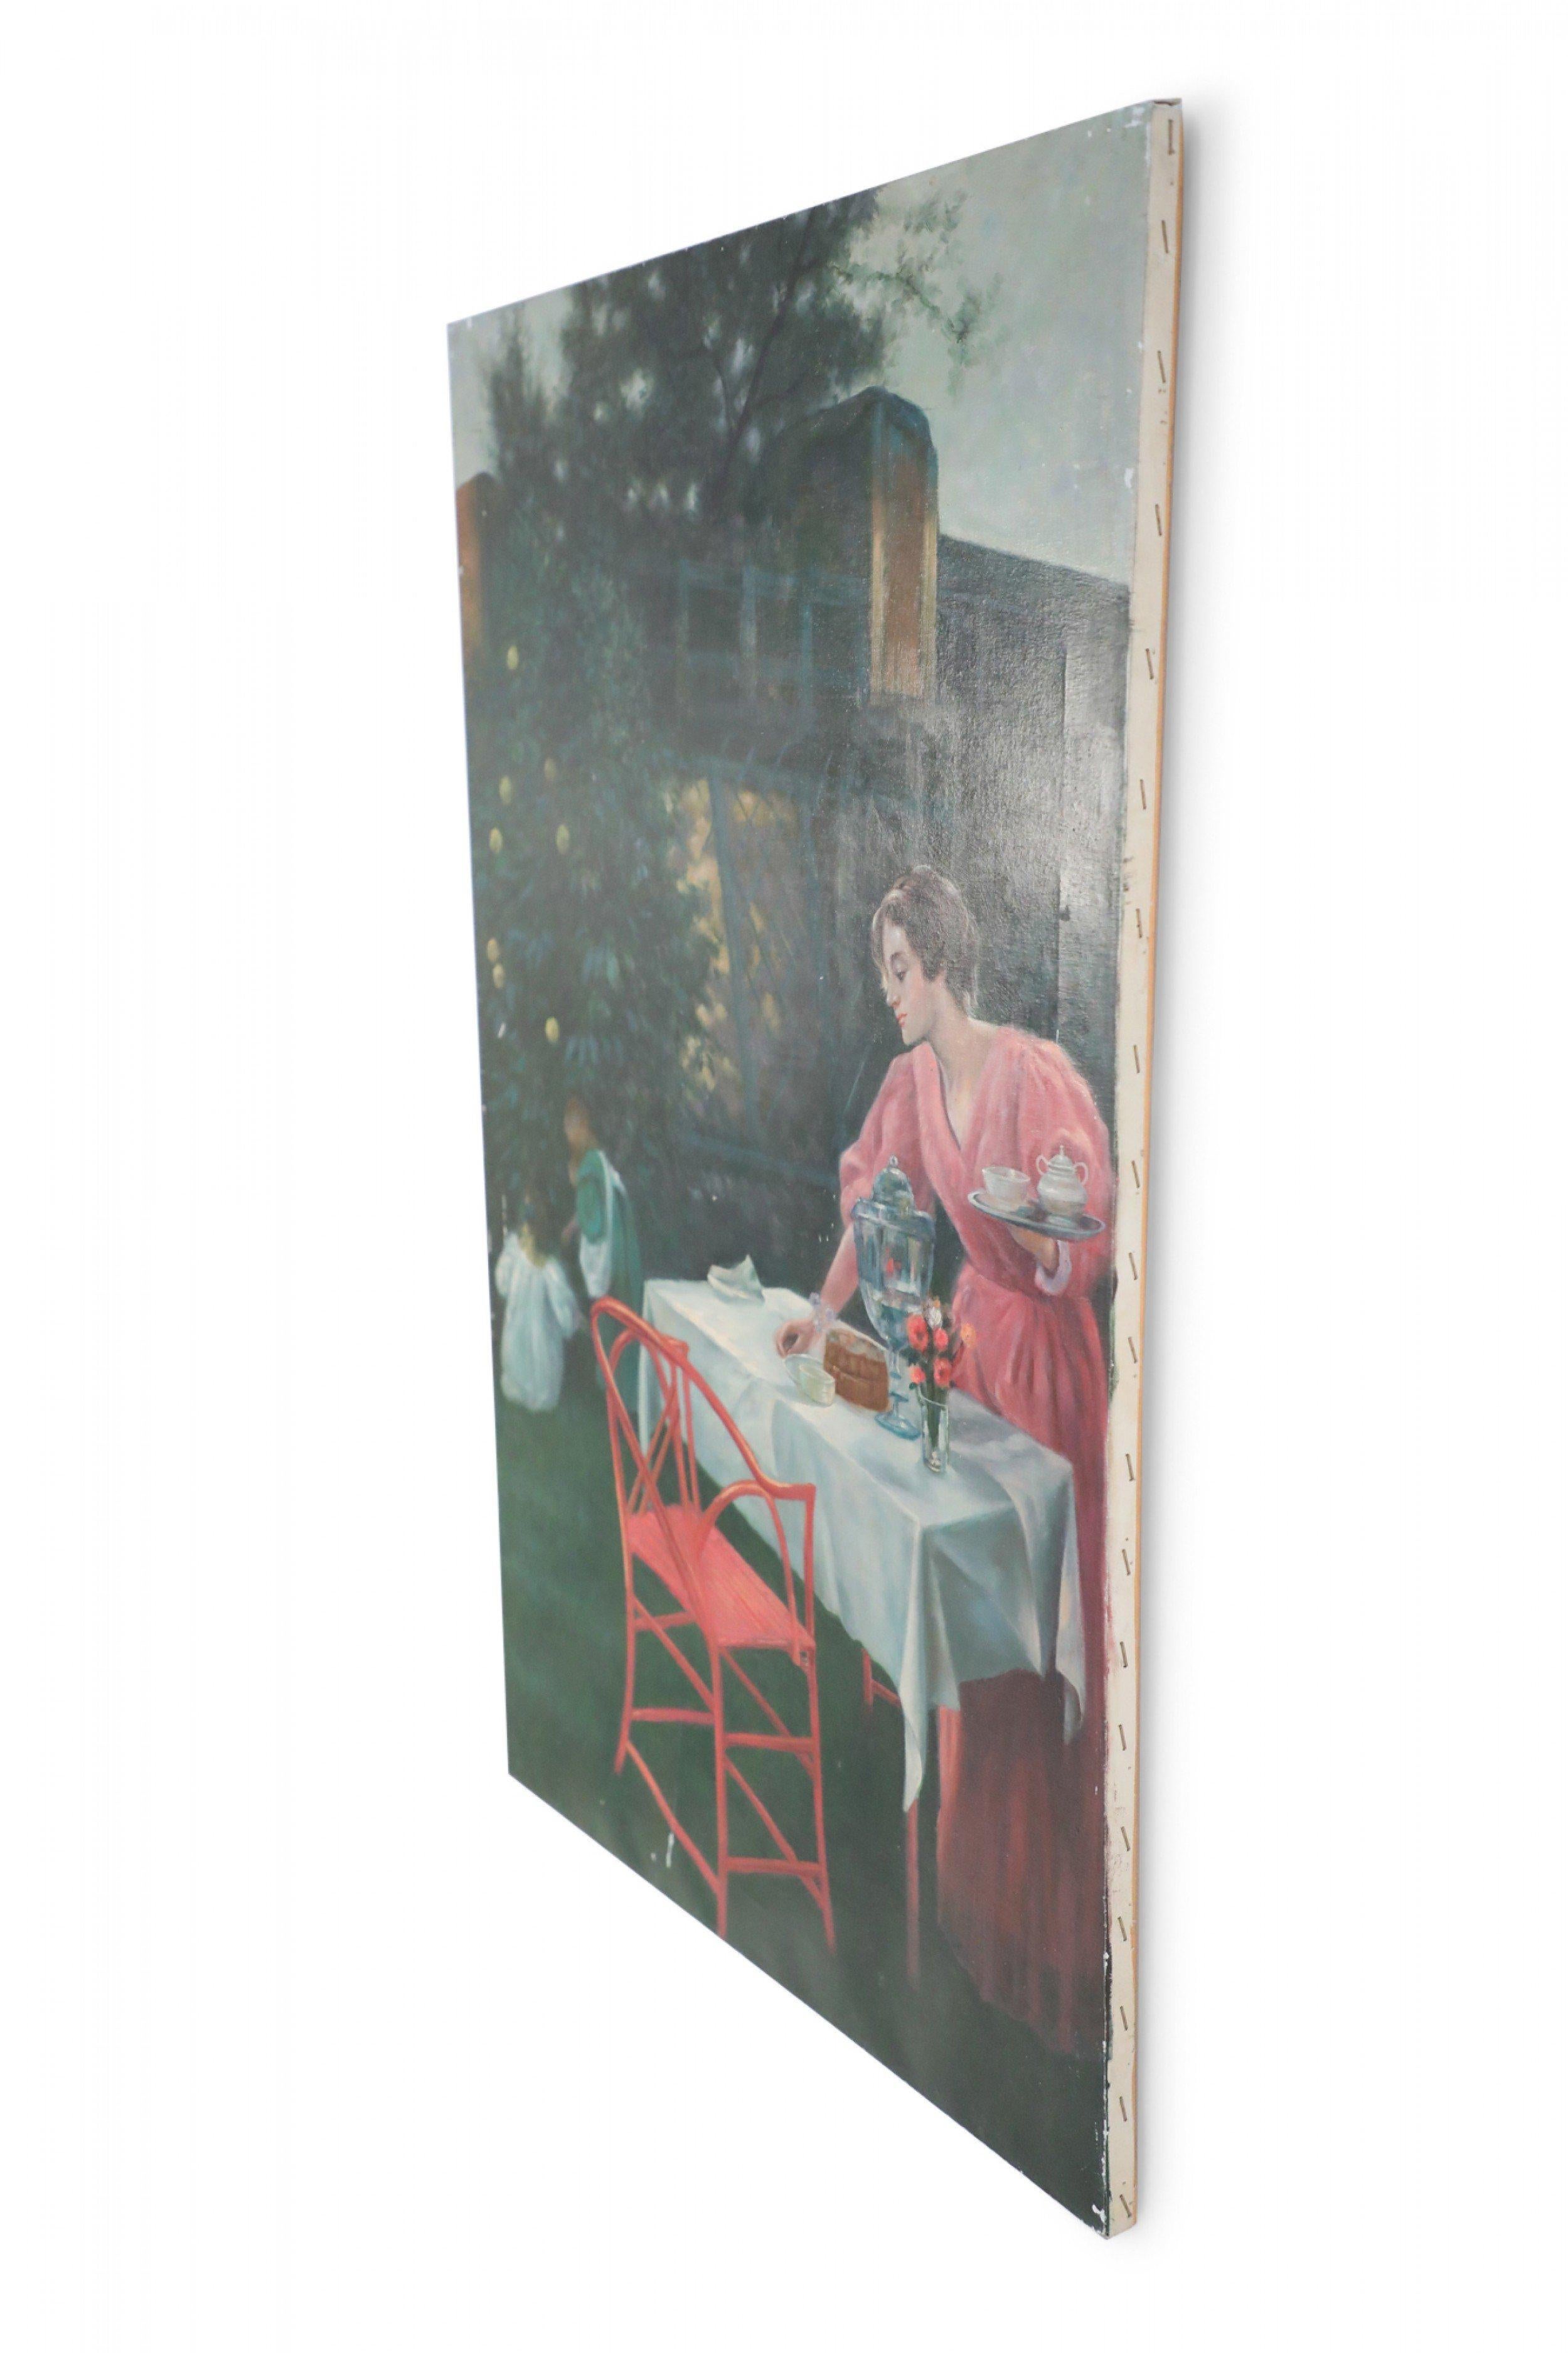 Vintage (20e siècle) peinture à l'huile sur toile non encadrée d'une femme portant une longue robe rose mettant une table pour le thé à côté d'une maison, tandis que deux enfants jouent sous un pommier à proximité.
 